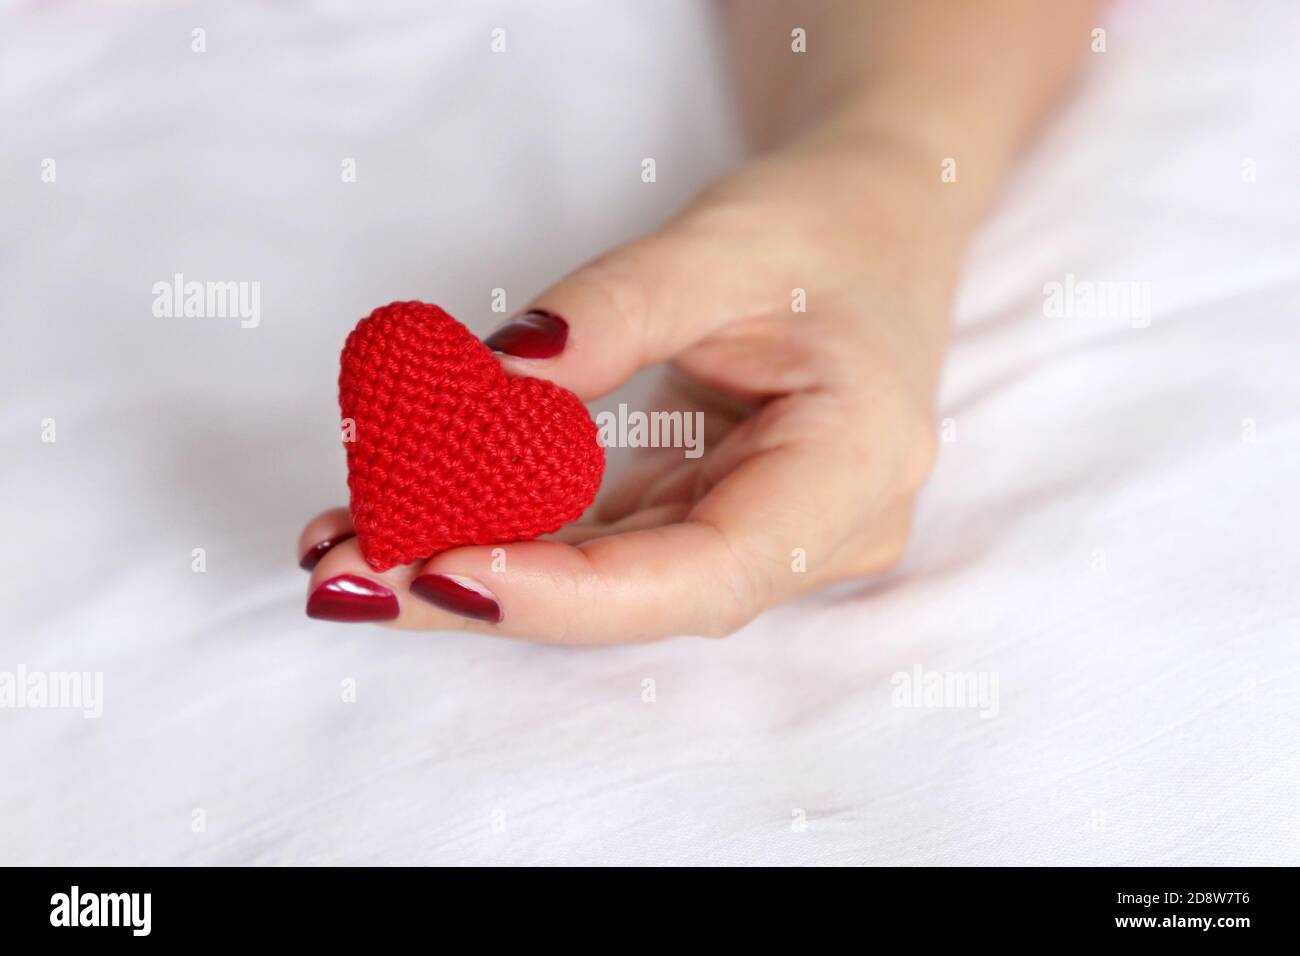 Rot gestricktes Herz in weiblicher Hand auf einem Bett. Konzept der Liebe, Valentinstag Feier, Mutterschaft, Blutspende Stockfoto